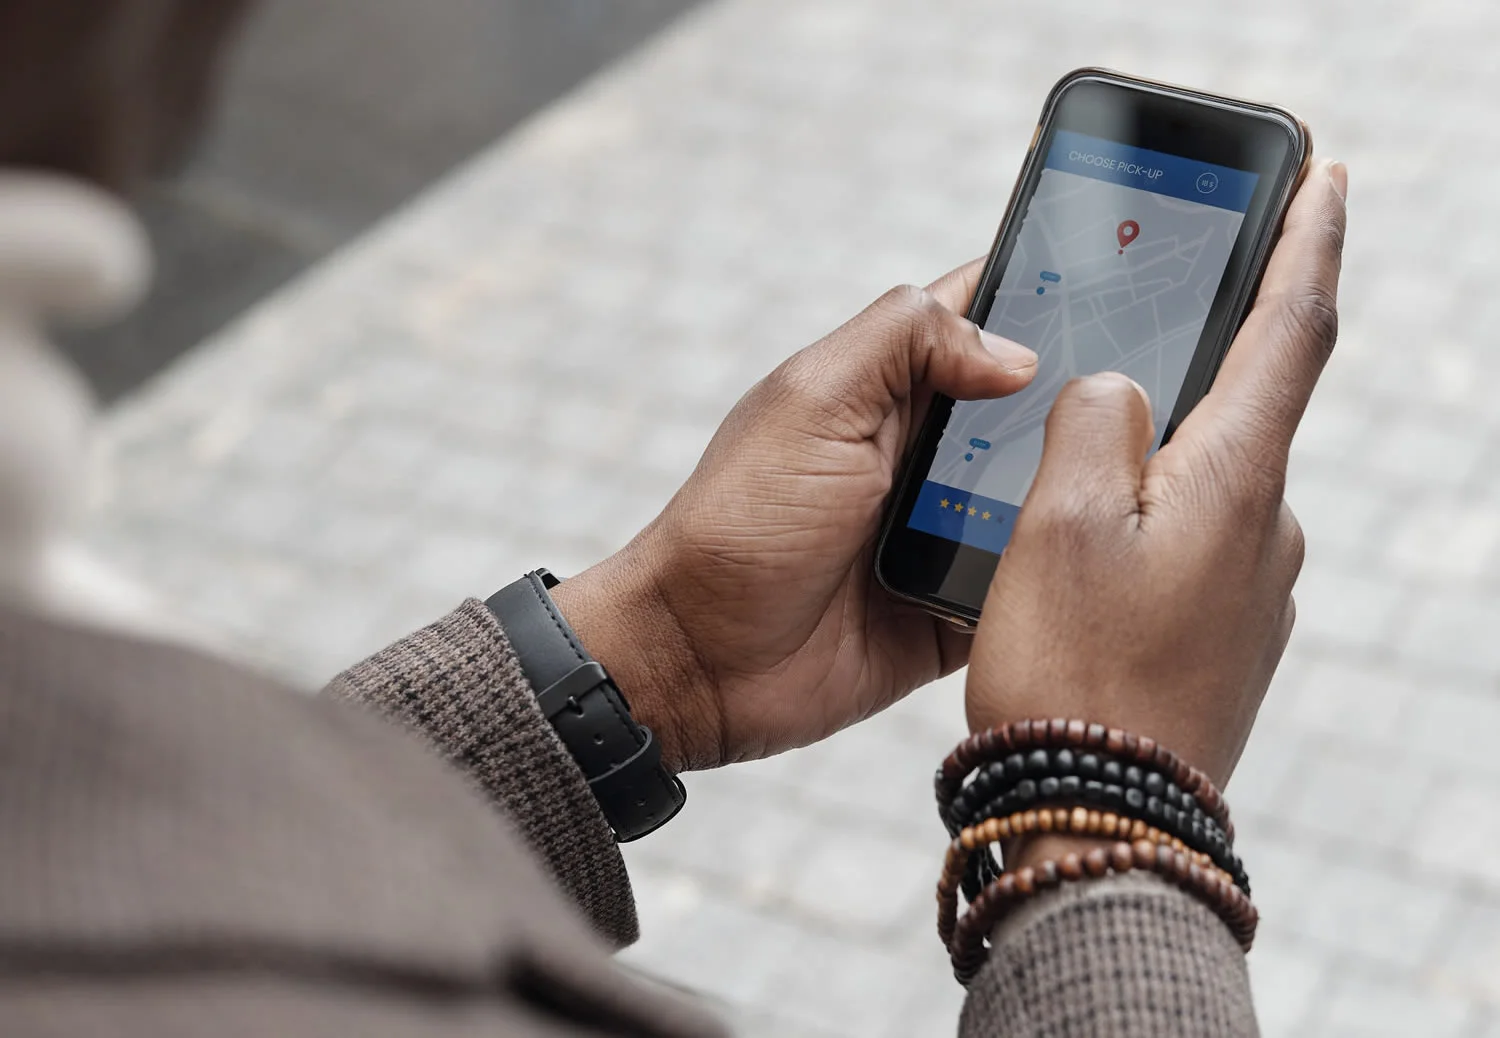 Lanza tu propia app tipo Uber personalizada para tu negocio y país con nuestra solución líder